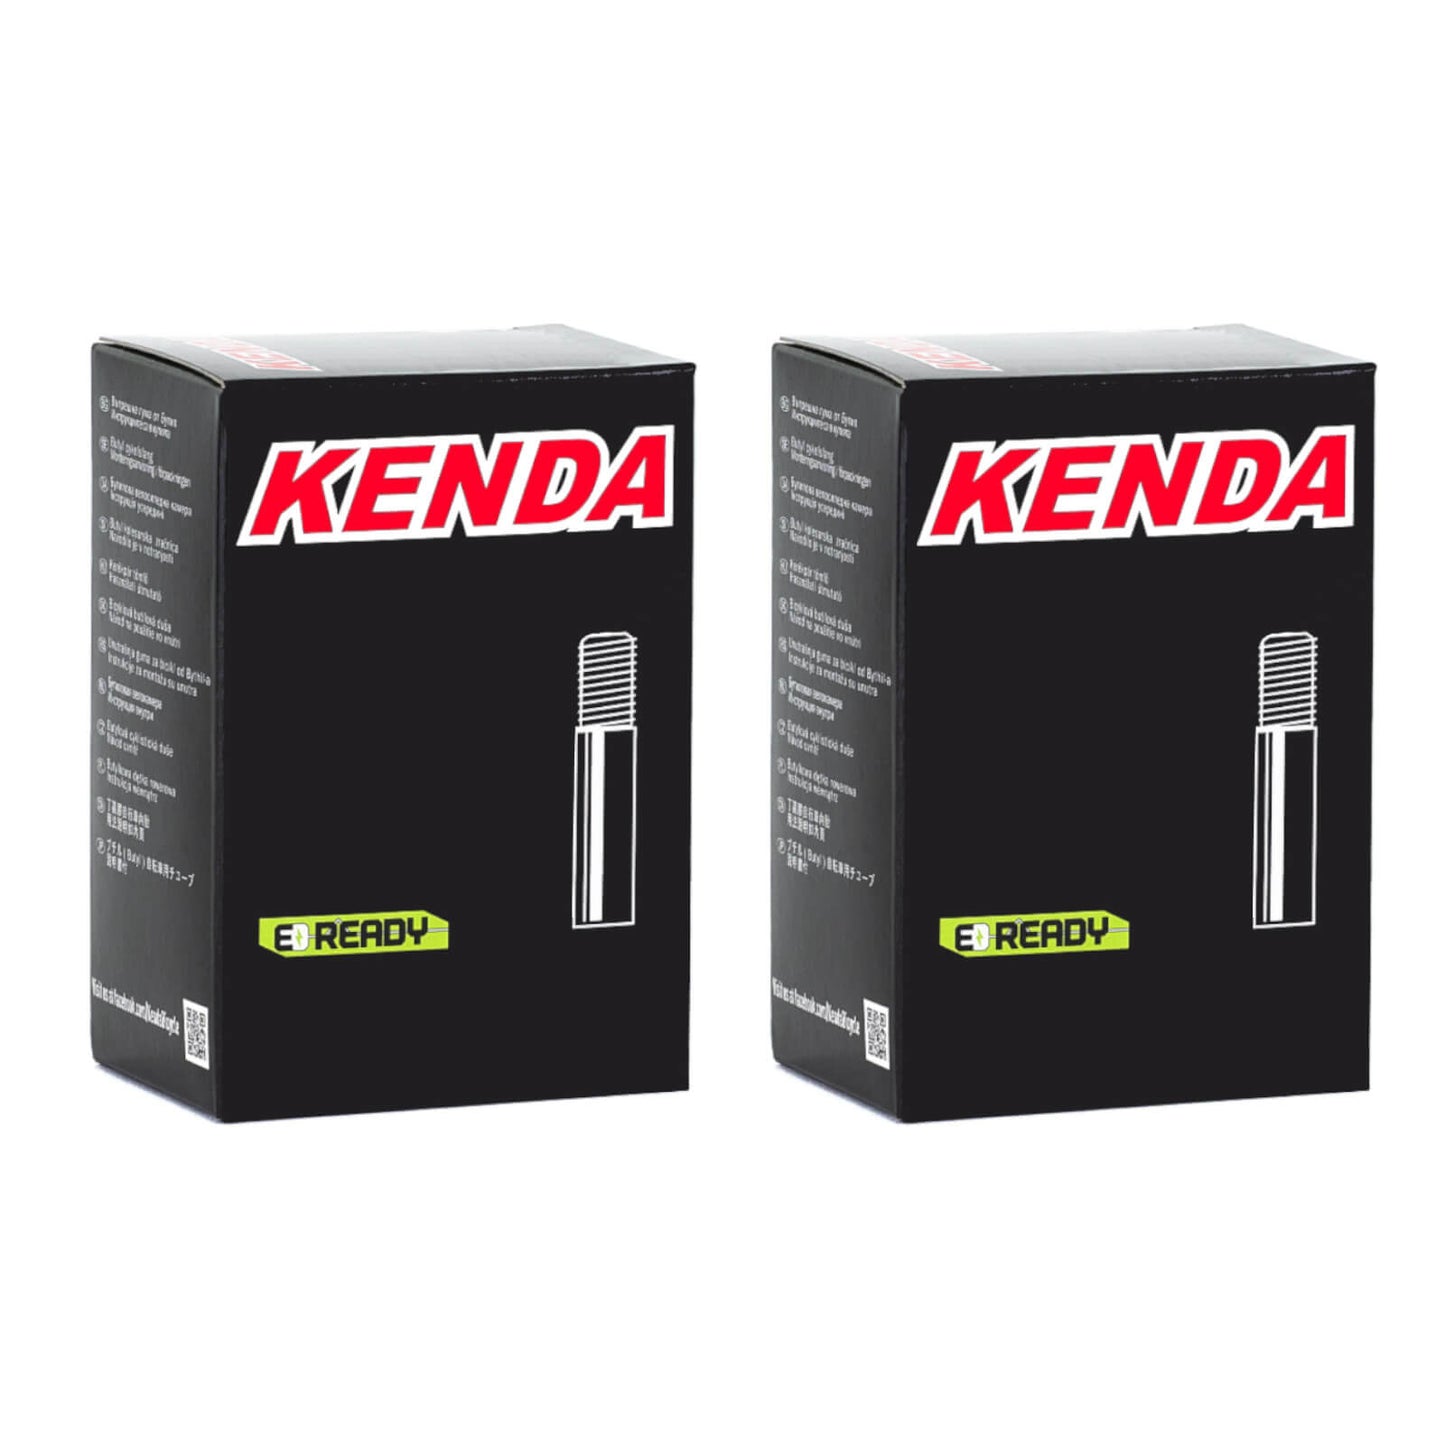 Kenda 20x3.7-4.0" 20 Inch Schrader Valve Bike Inner Tube Pack of 2